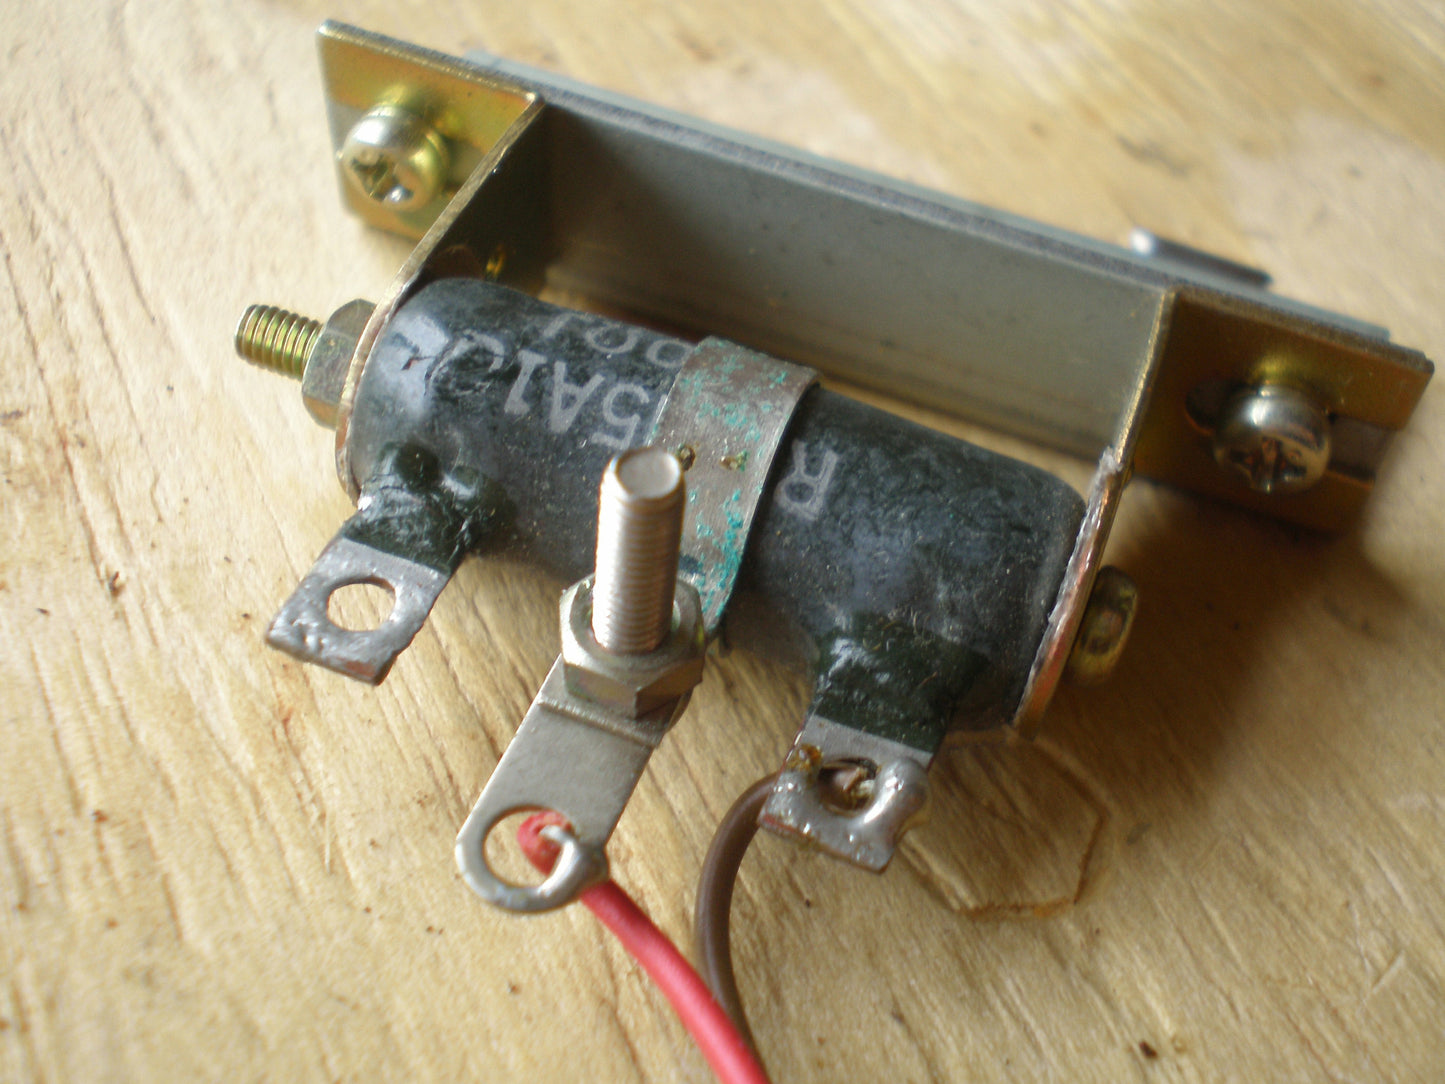 Tascam 144 100 ohm 5 Watt wirewound rheostat variable resistor